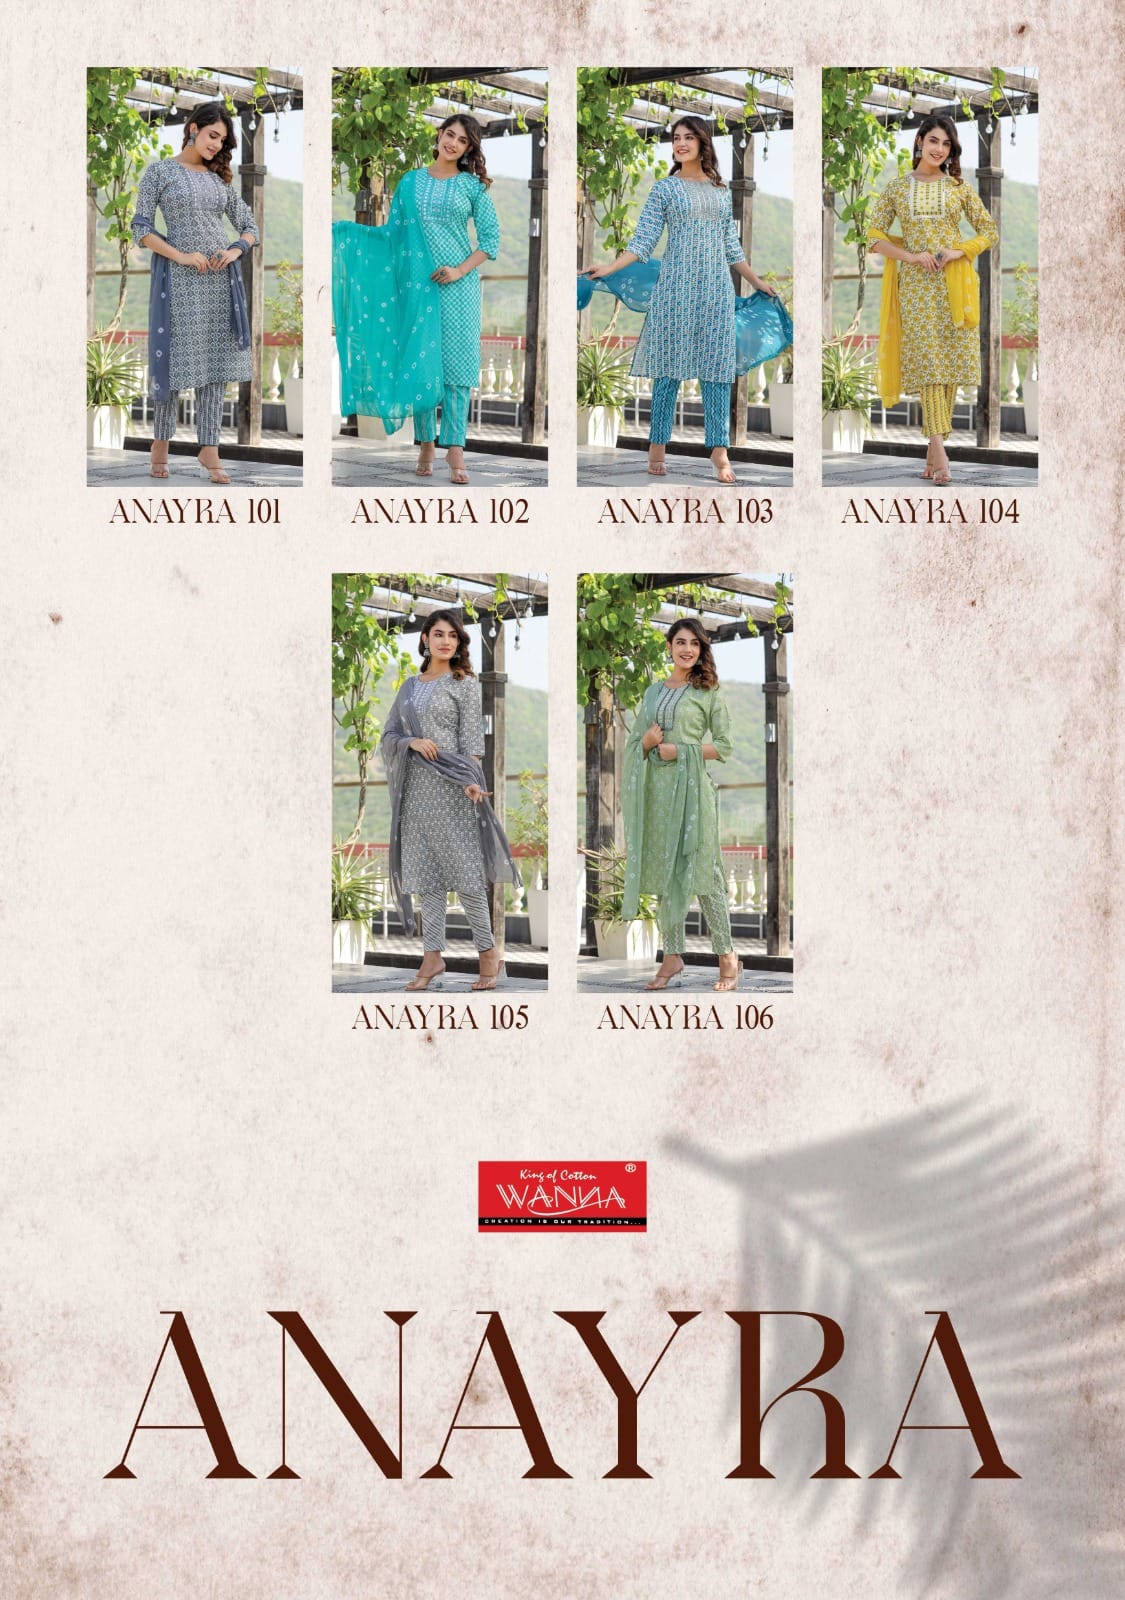 Wanna Anayra collection 3